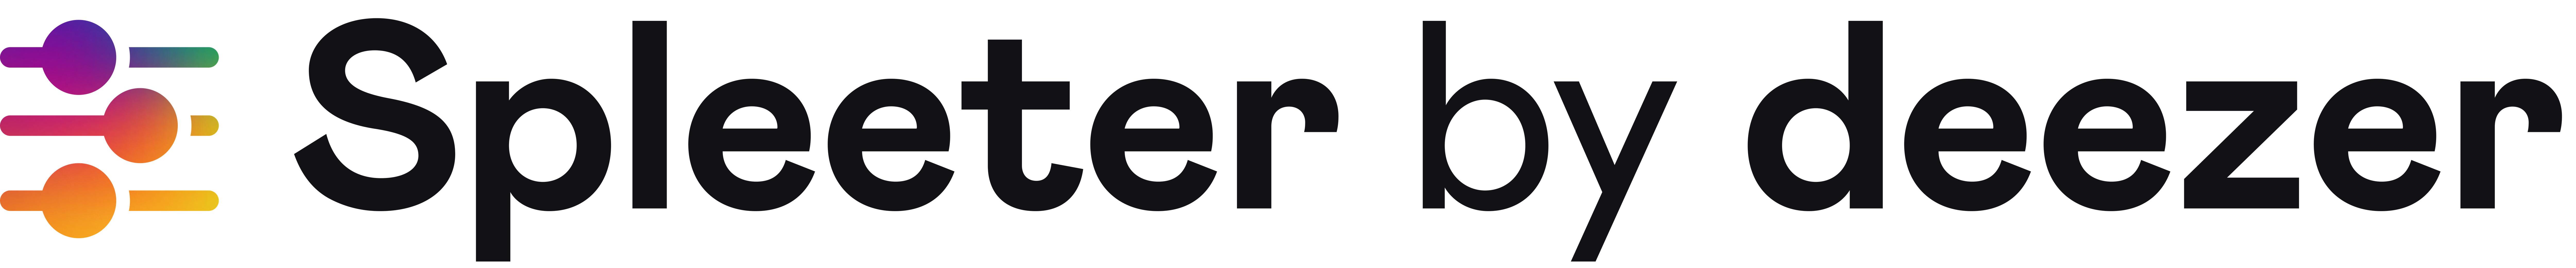 spleeter_logo